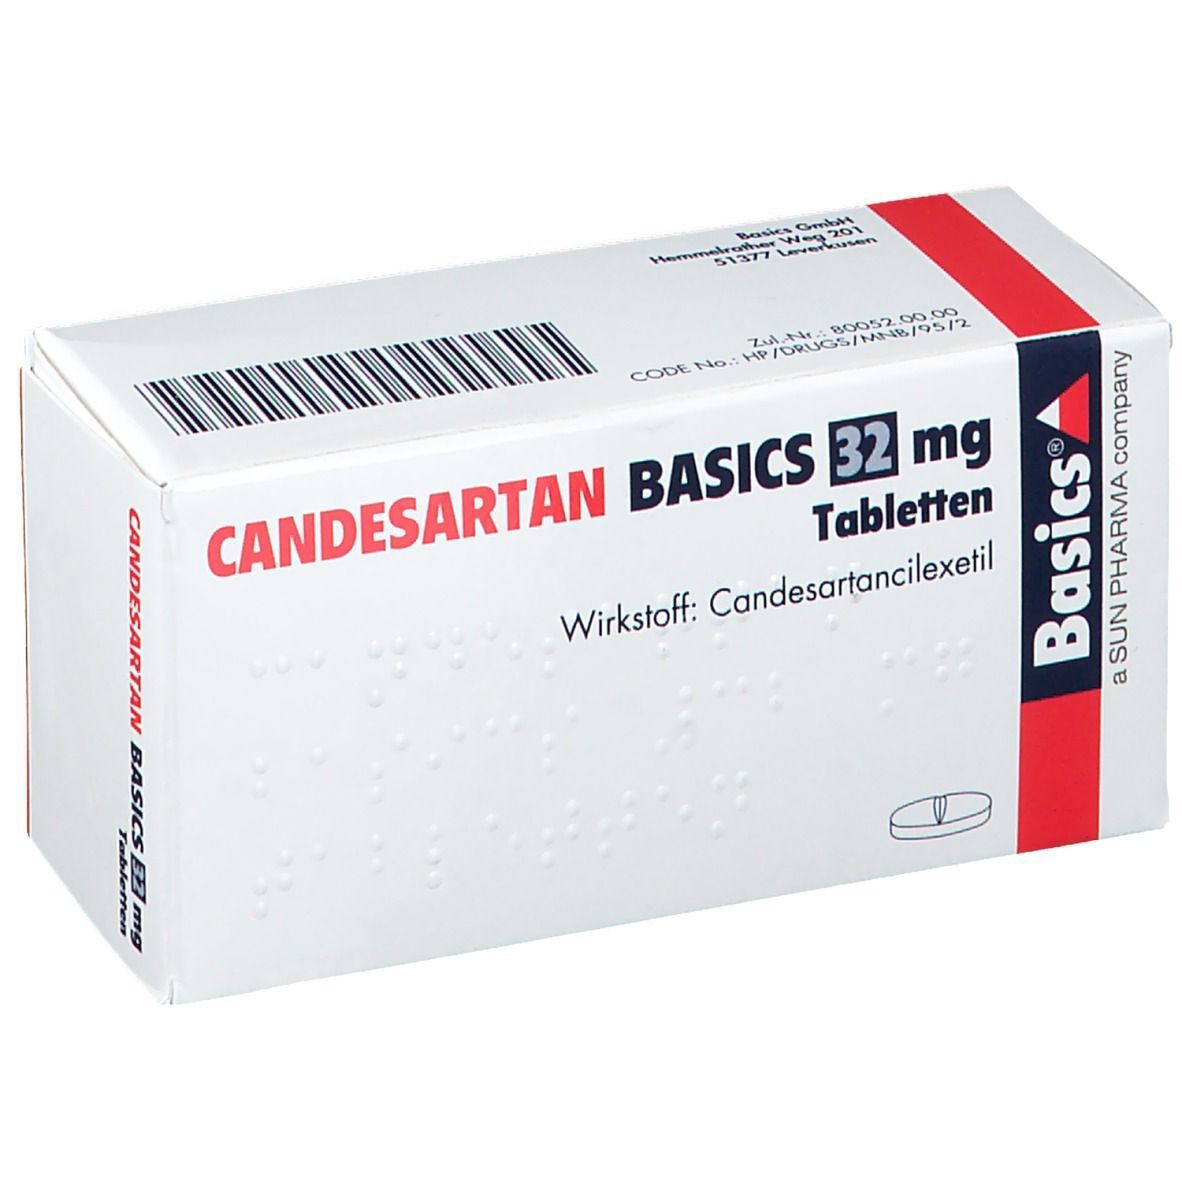 CANDESARTAN BASICS 32 mg